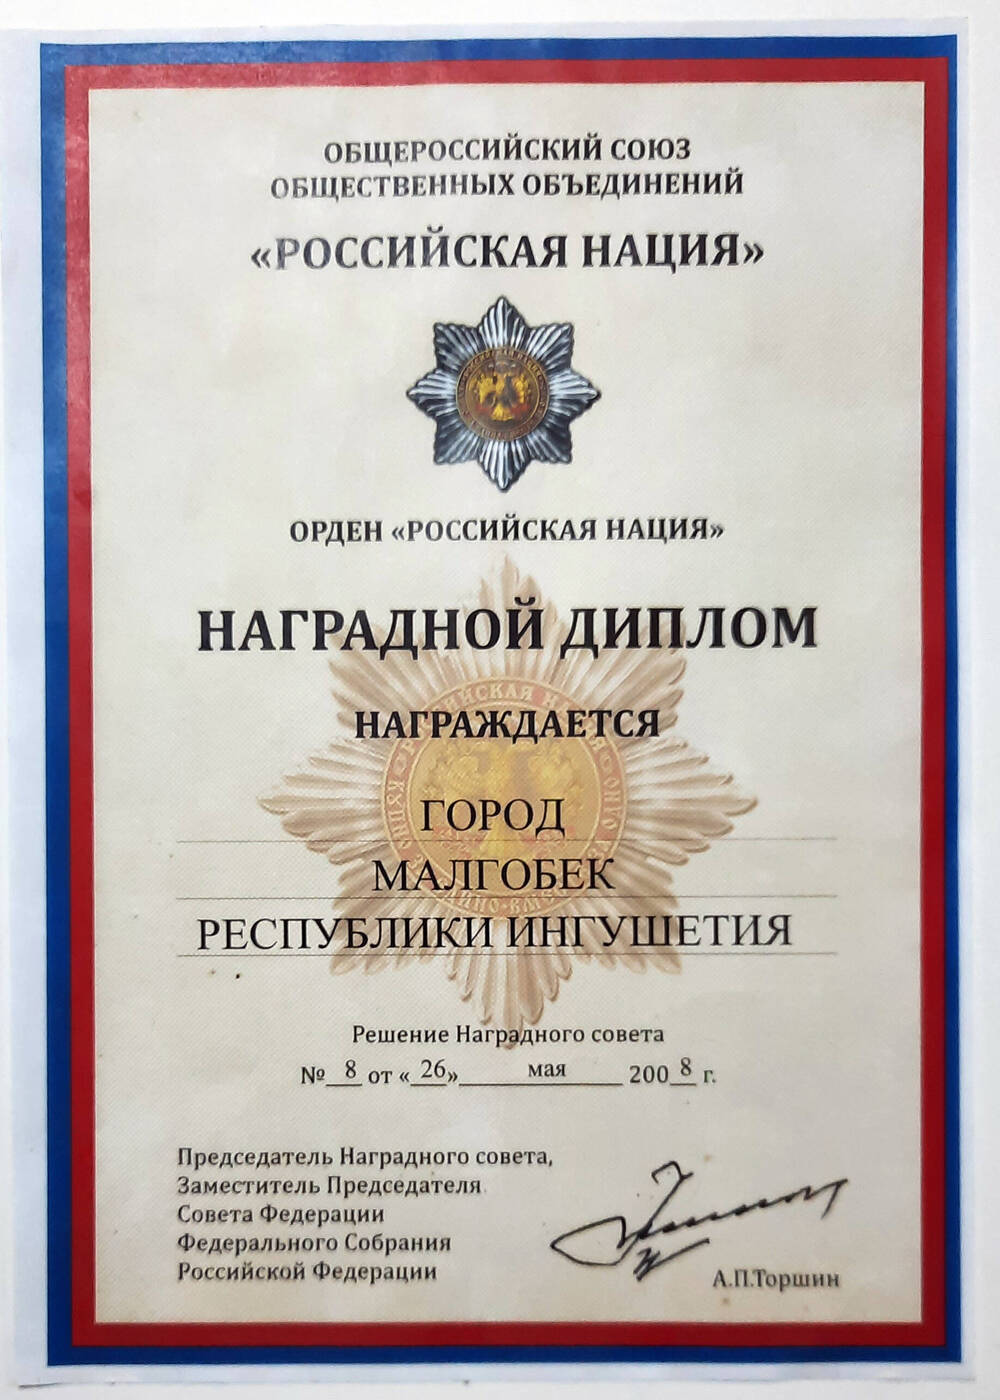 Наградной диплом о награждении г. Малгобека орденом Российская нация